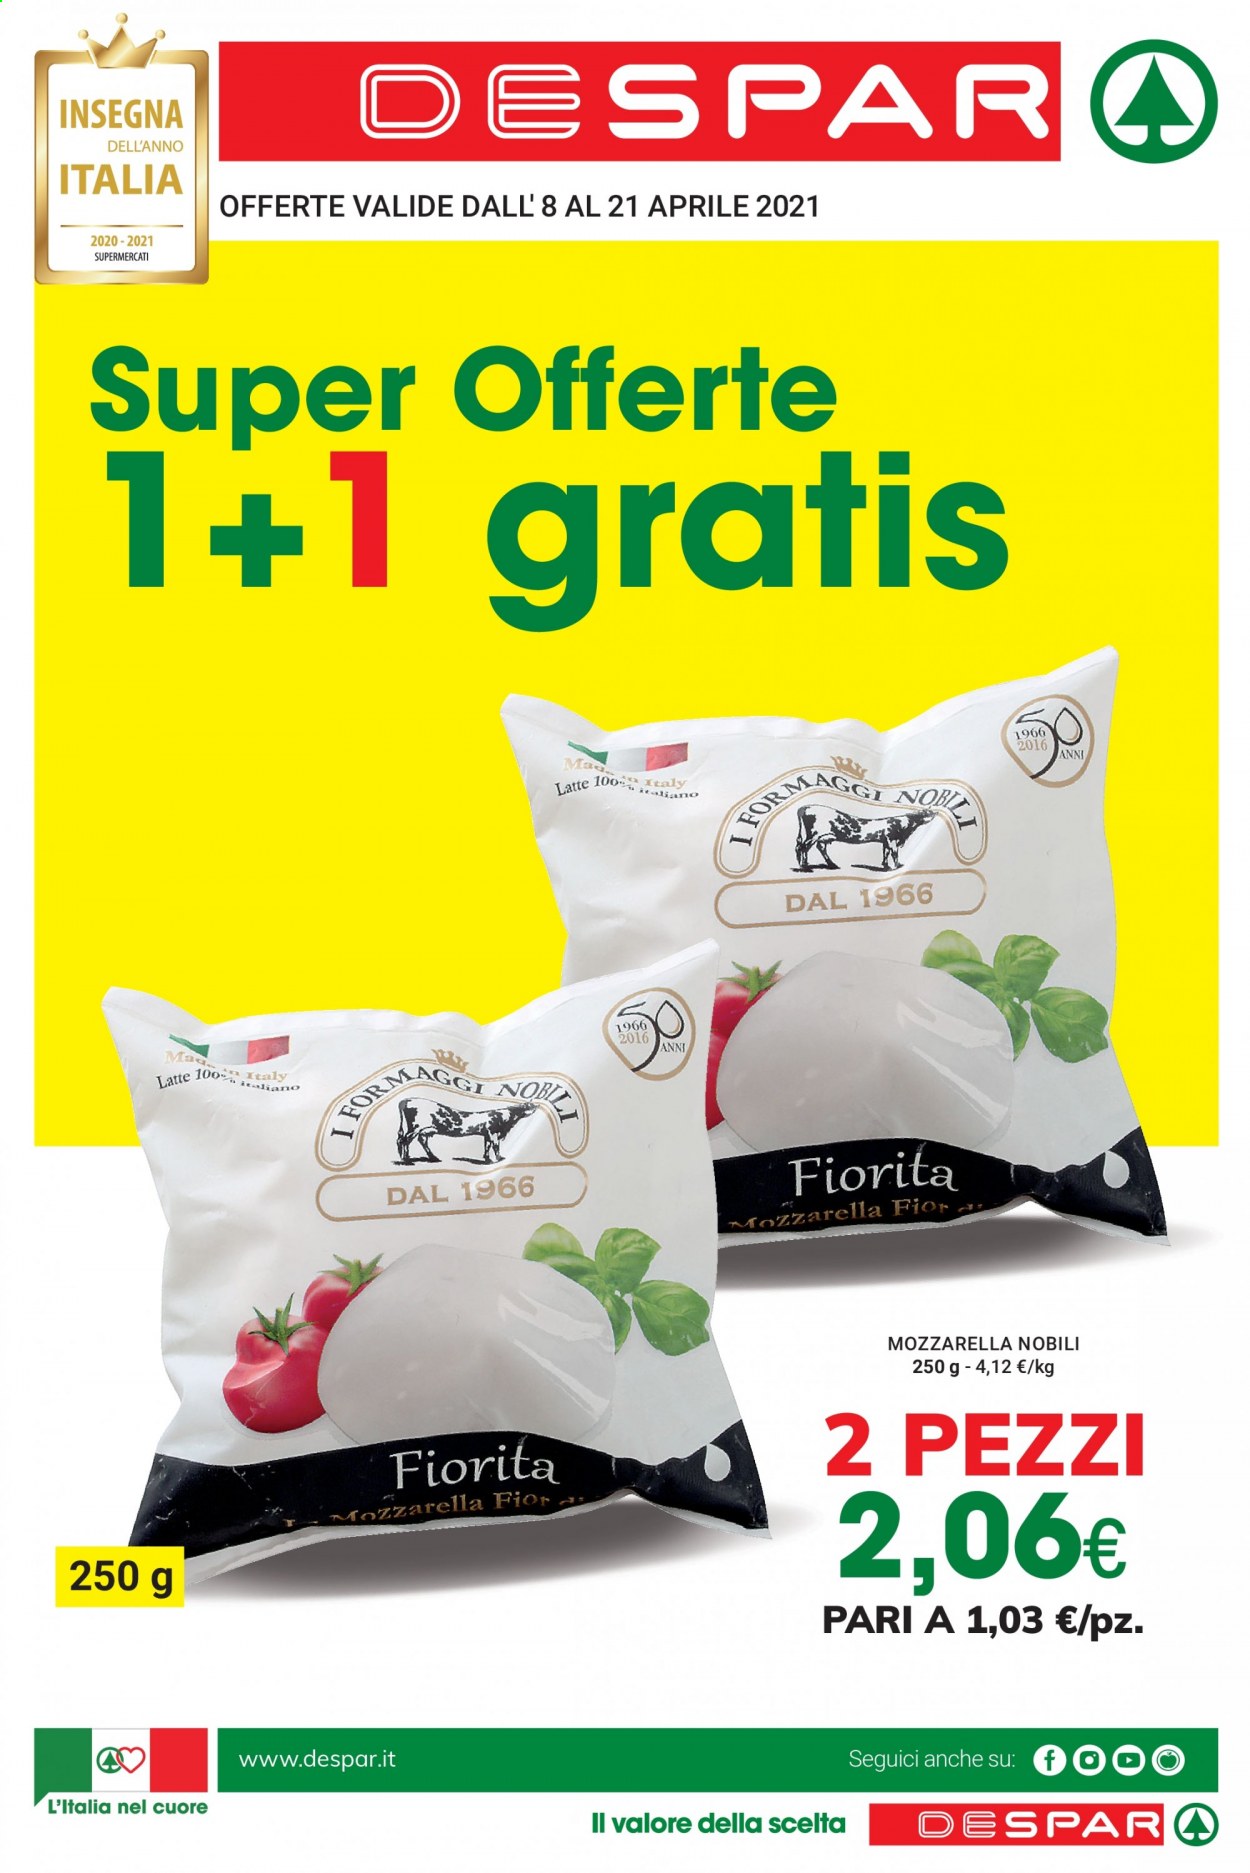 thumbnail - Volantino Despar - 8/4/2021 - 21/4/2021 - Prodotti in offerta - formaggio, mozzarella, latte. Pagina 1.